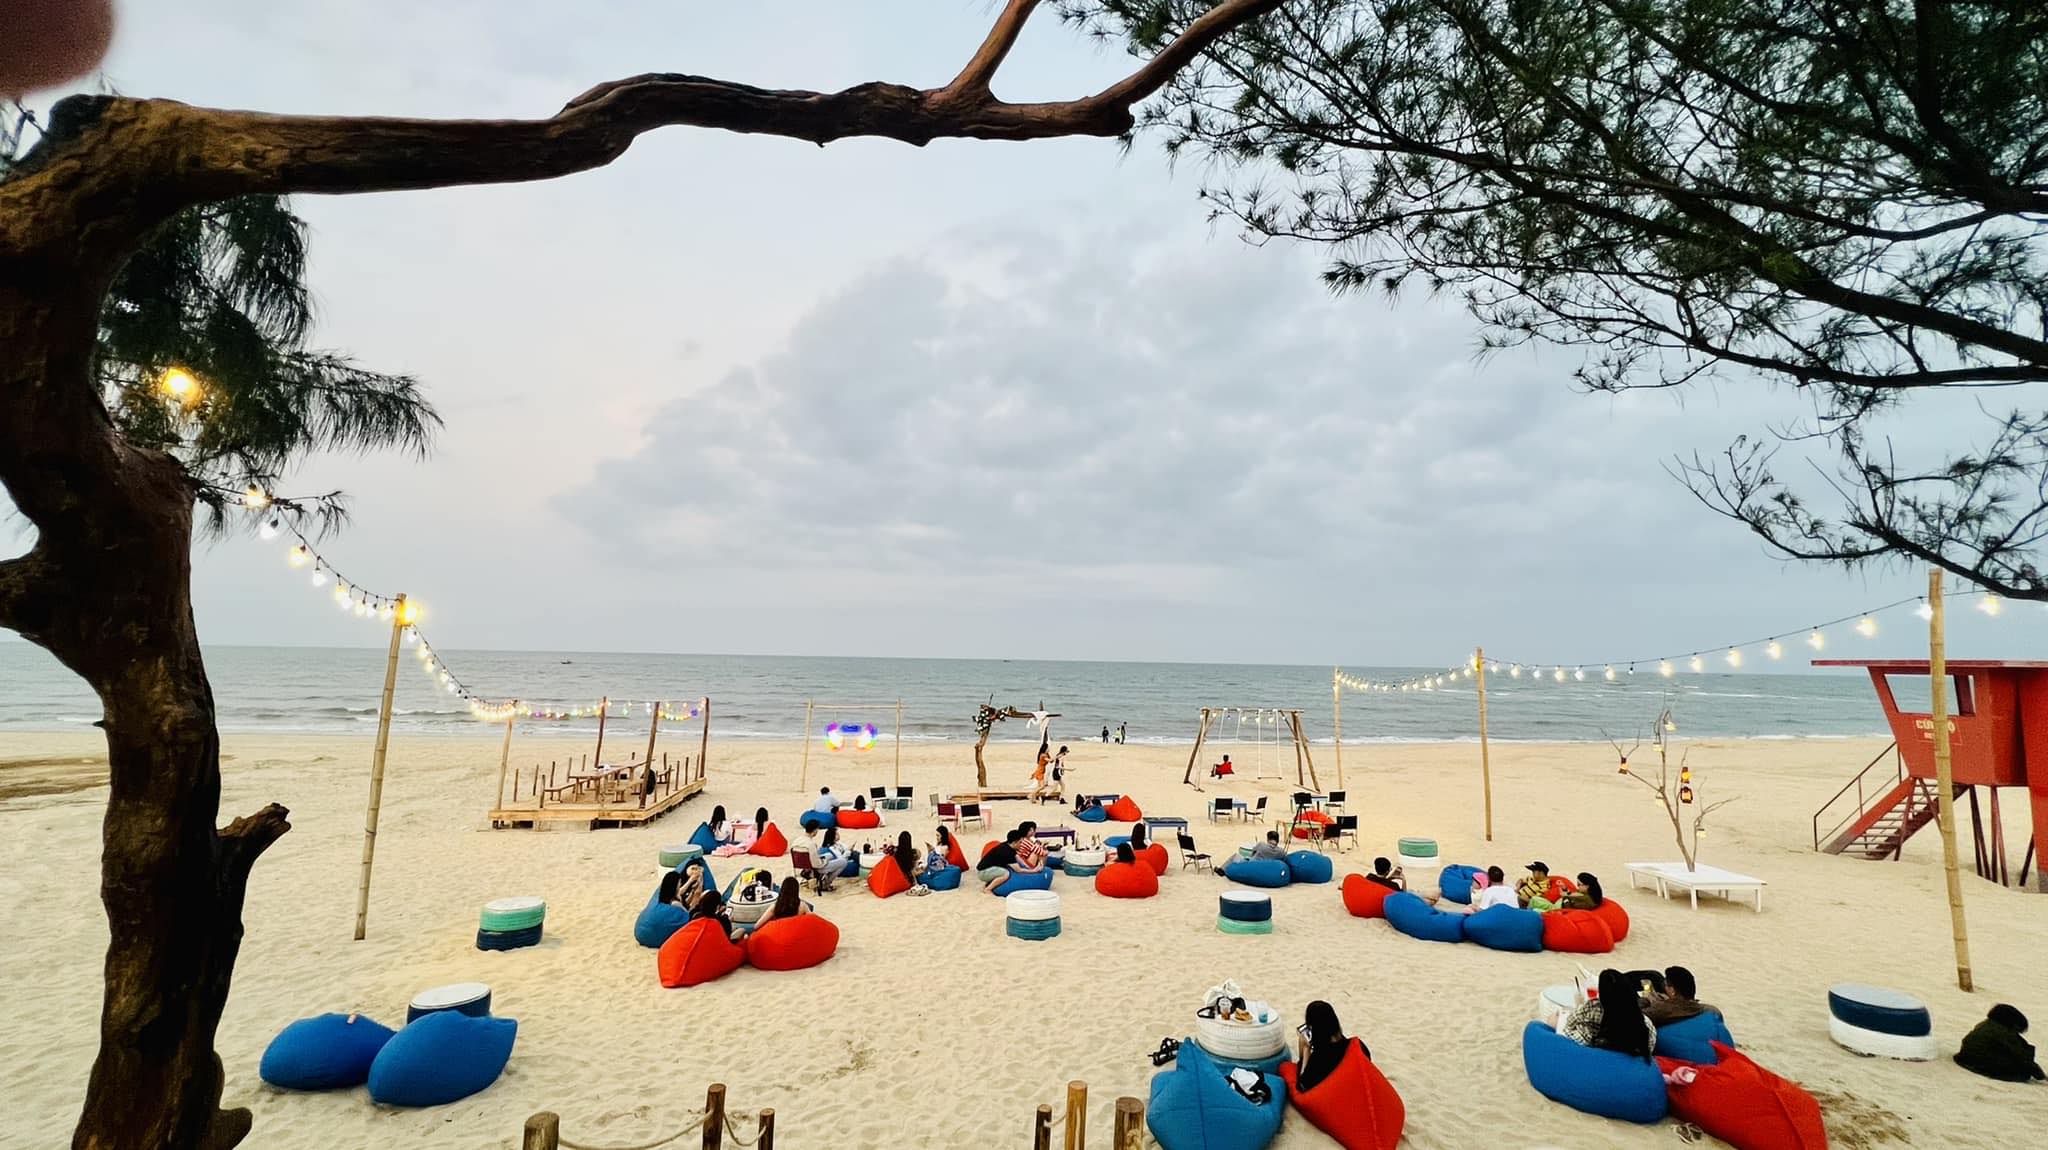 Nhật Lệ – top 10 bãi biển xinh đẹp, quyến rũ bậc nhất tại Việt Nam.